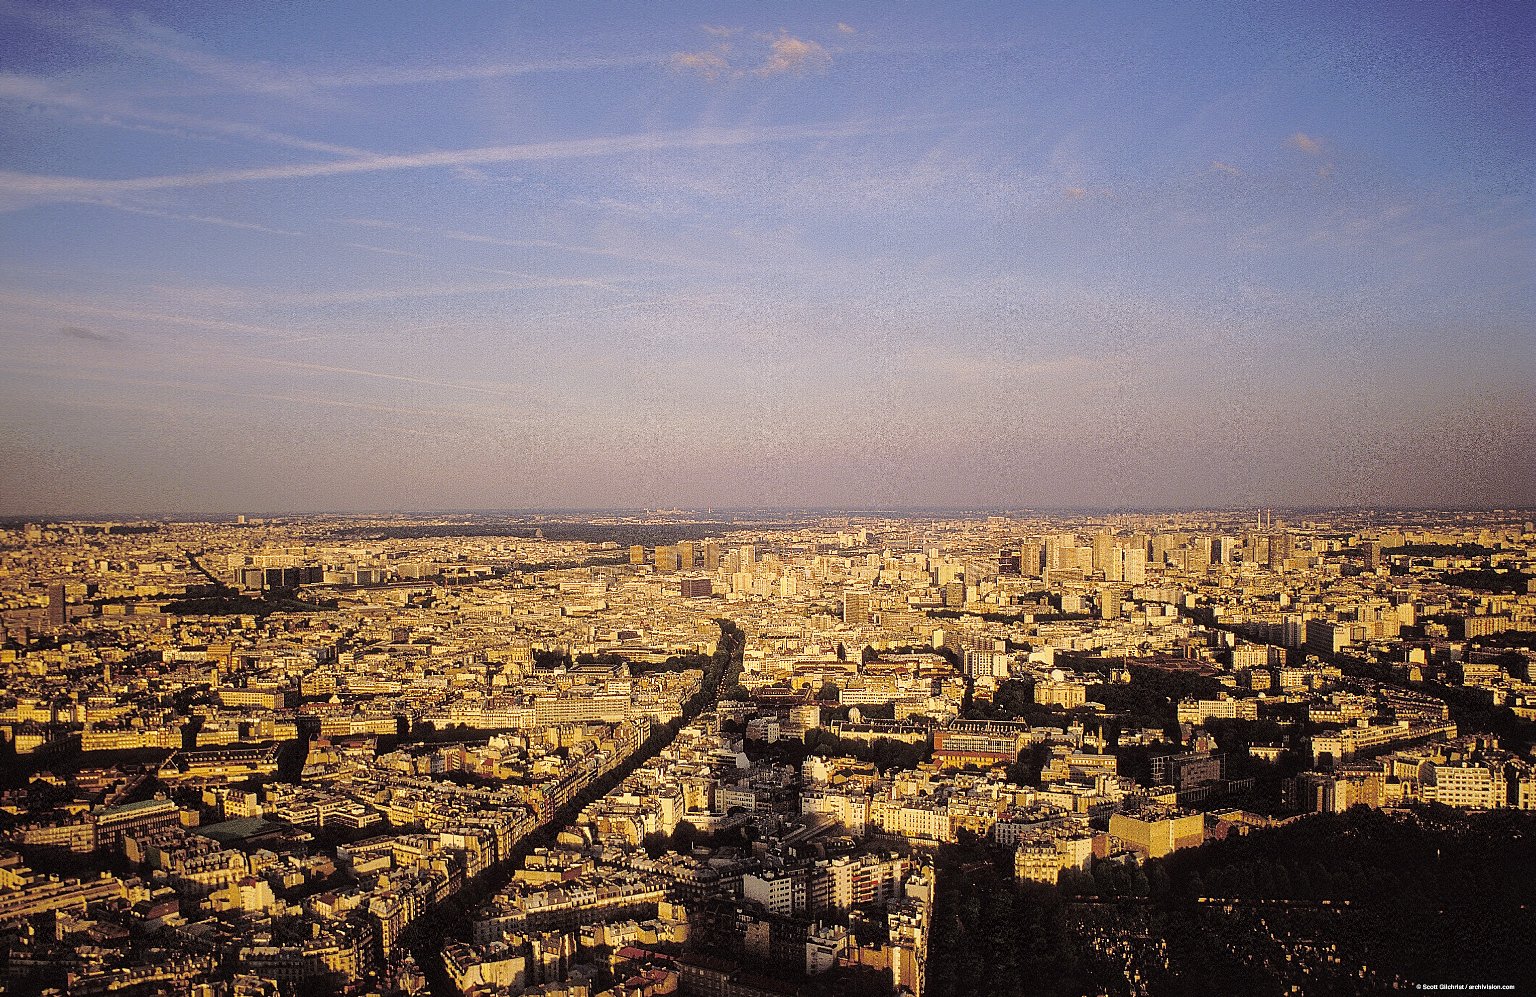 Paris: Aerial Topographic Views